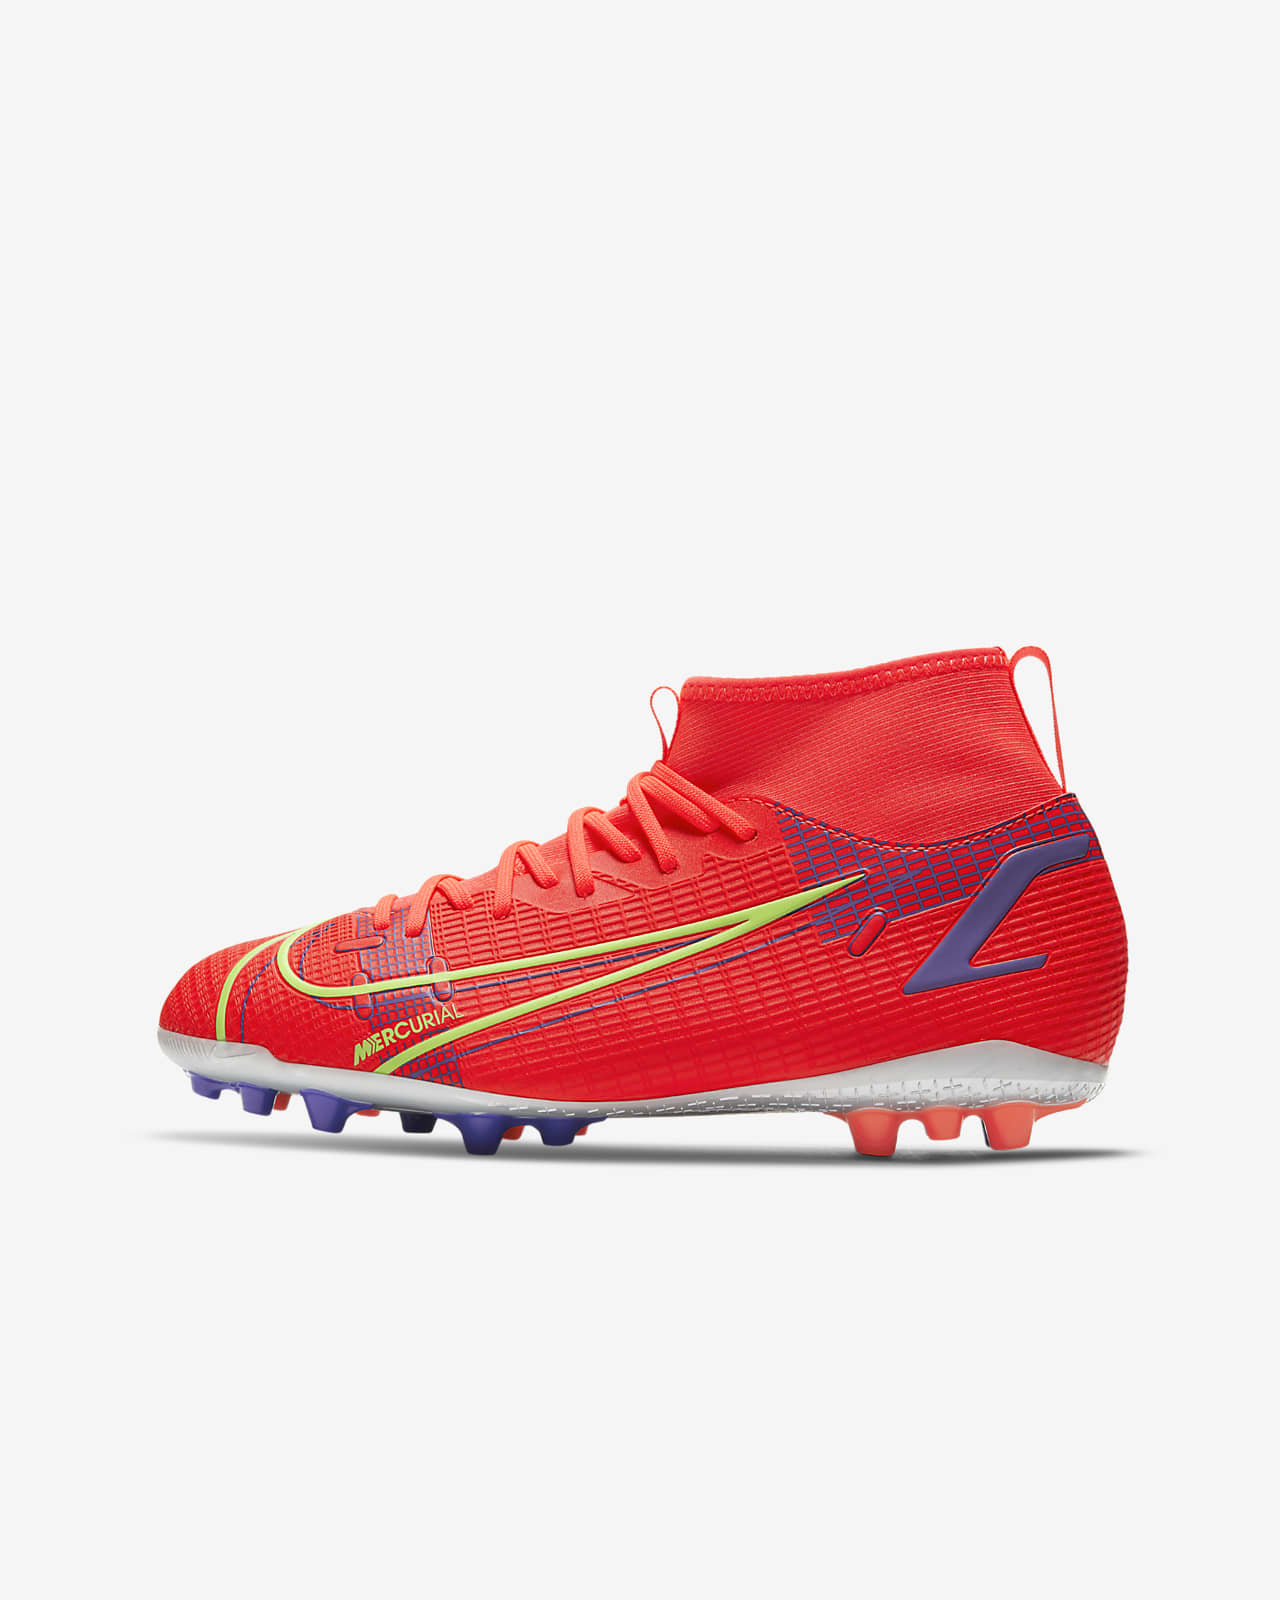 nike football boots artificial grass